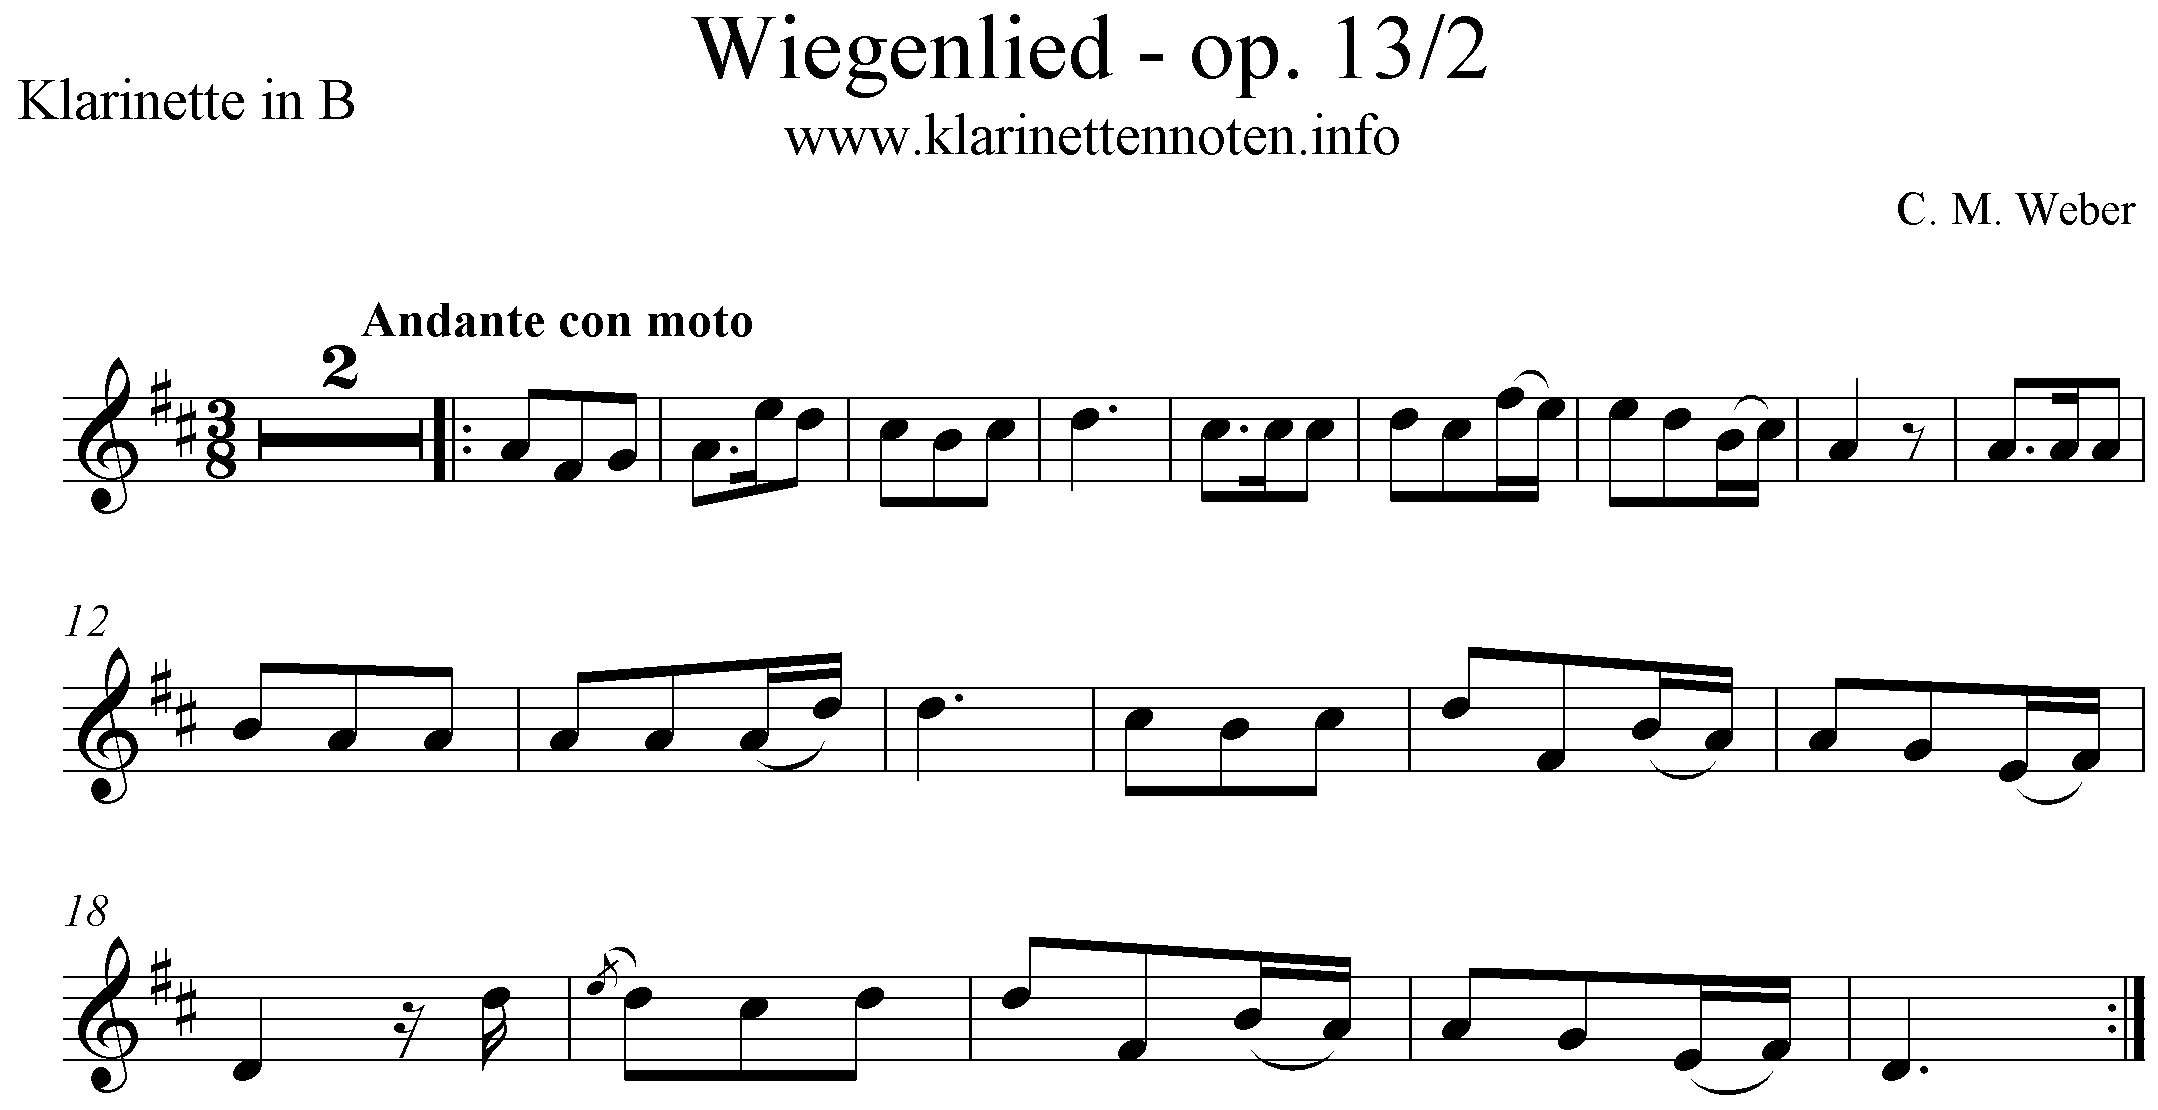 Wiegenlied, Weber, op.13/2, Lullaby, Cradle Song